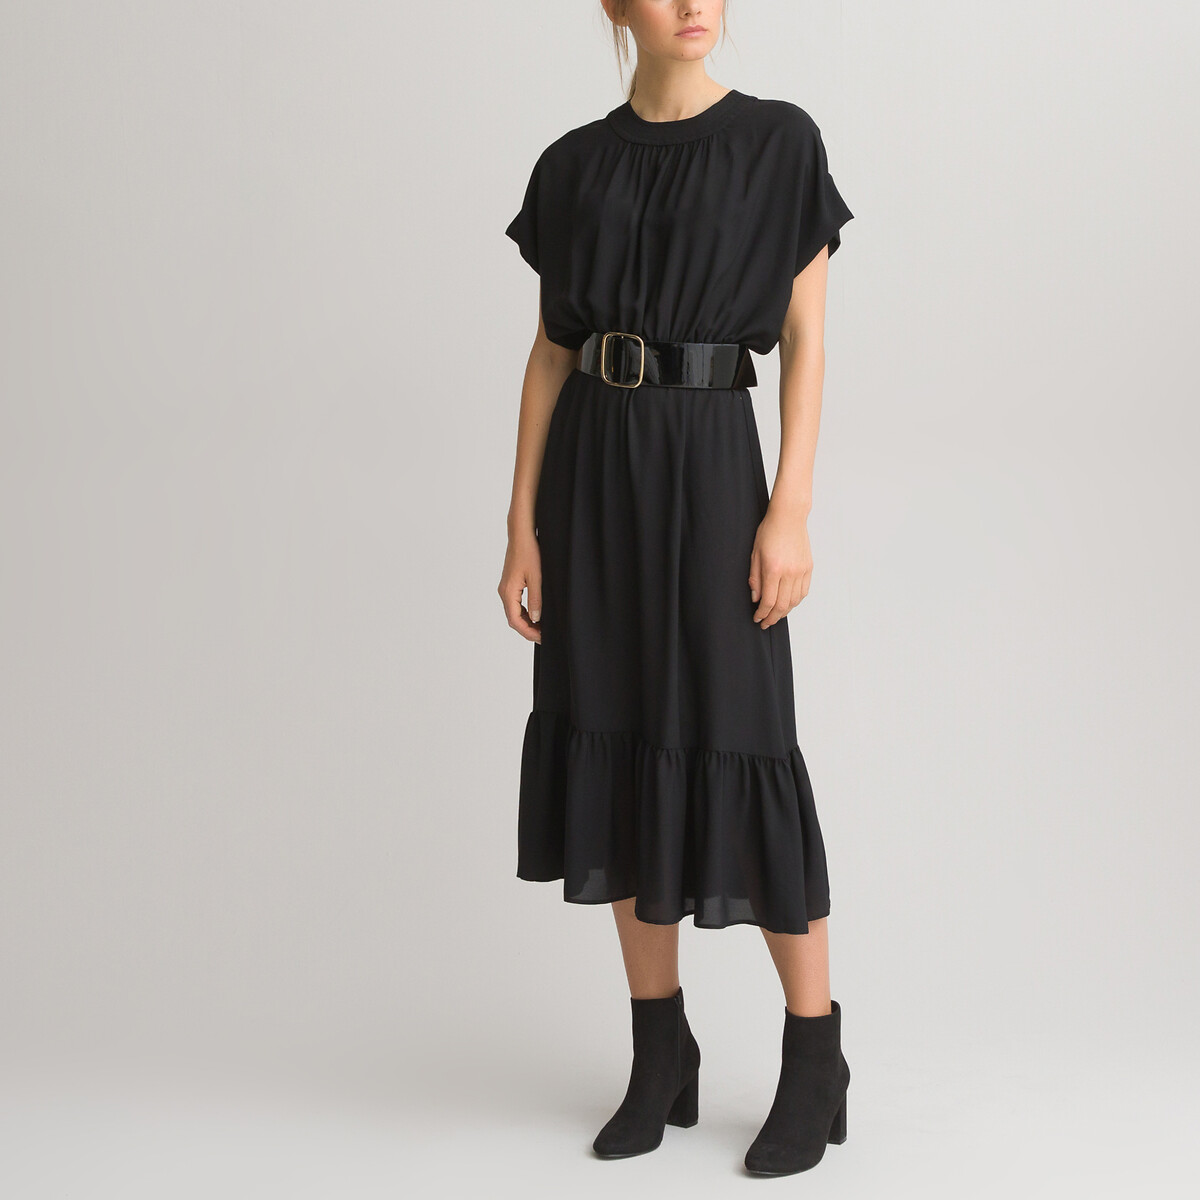 Платье LaRedoute Длинное с короткими рукавами 42 (FR) - 48 (RUS) черный, размер 42 (FR) - 48 (RUS) Длинное с короткими рукавами 42 (FR) - 48 (RUS) черный - фото 1